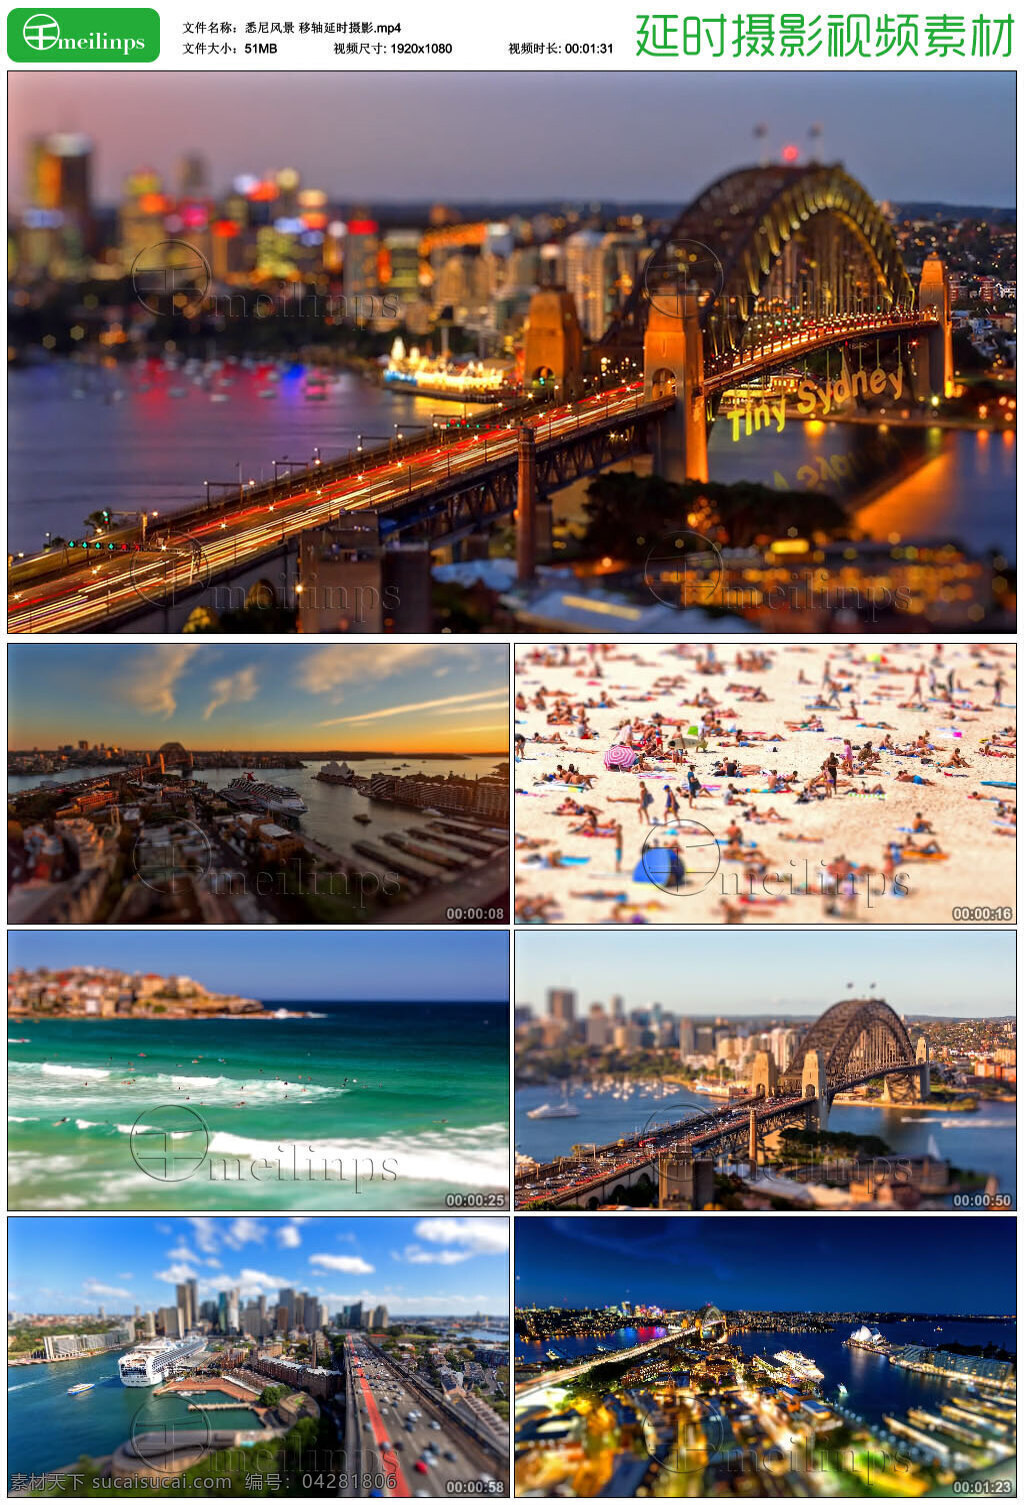 悉尼风景 移 轴 延时 hd 澳大利亚 悉尼 城市风景 夜景 夕阳 海边 日出 海滩 海水 大桥 城市公路 楼宇 悉尼歌剧院 港口 移轴 视频素材 mp4 黑色